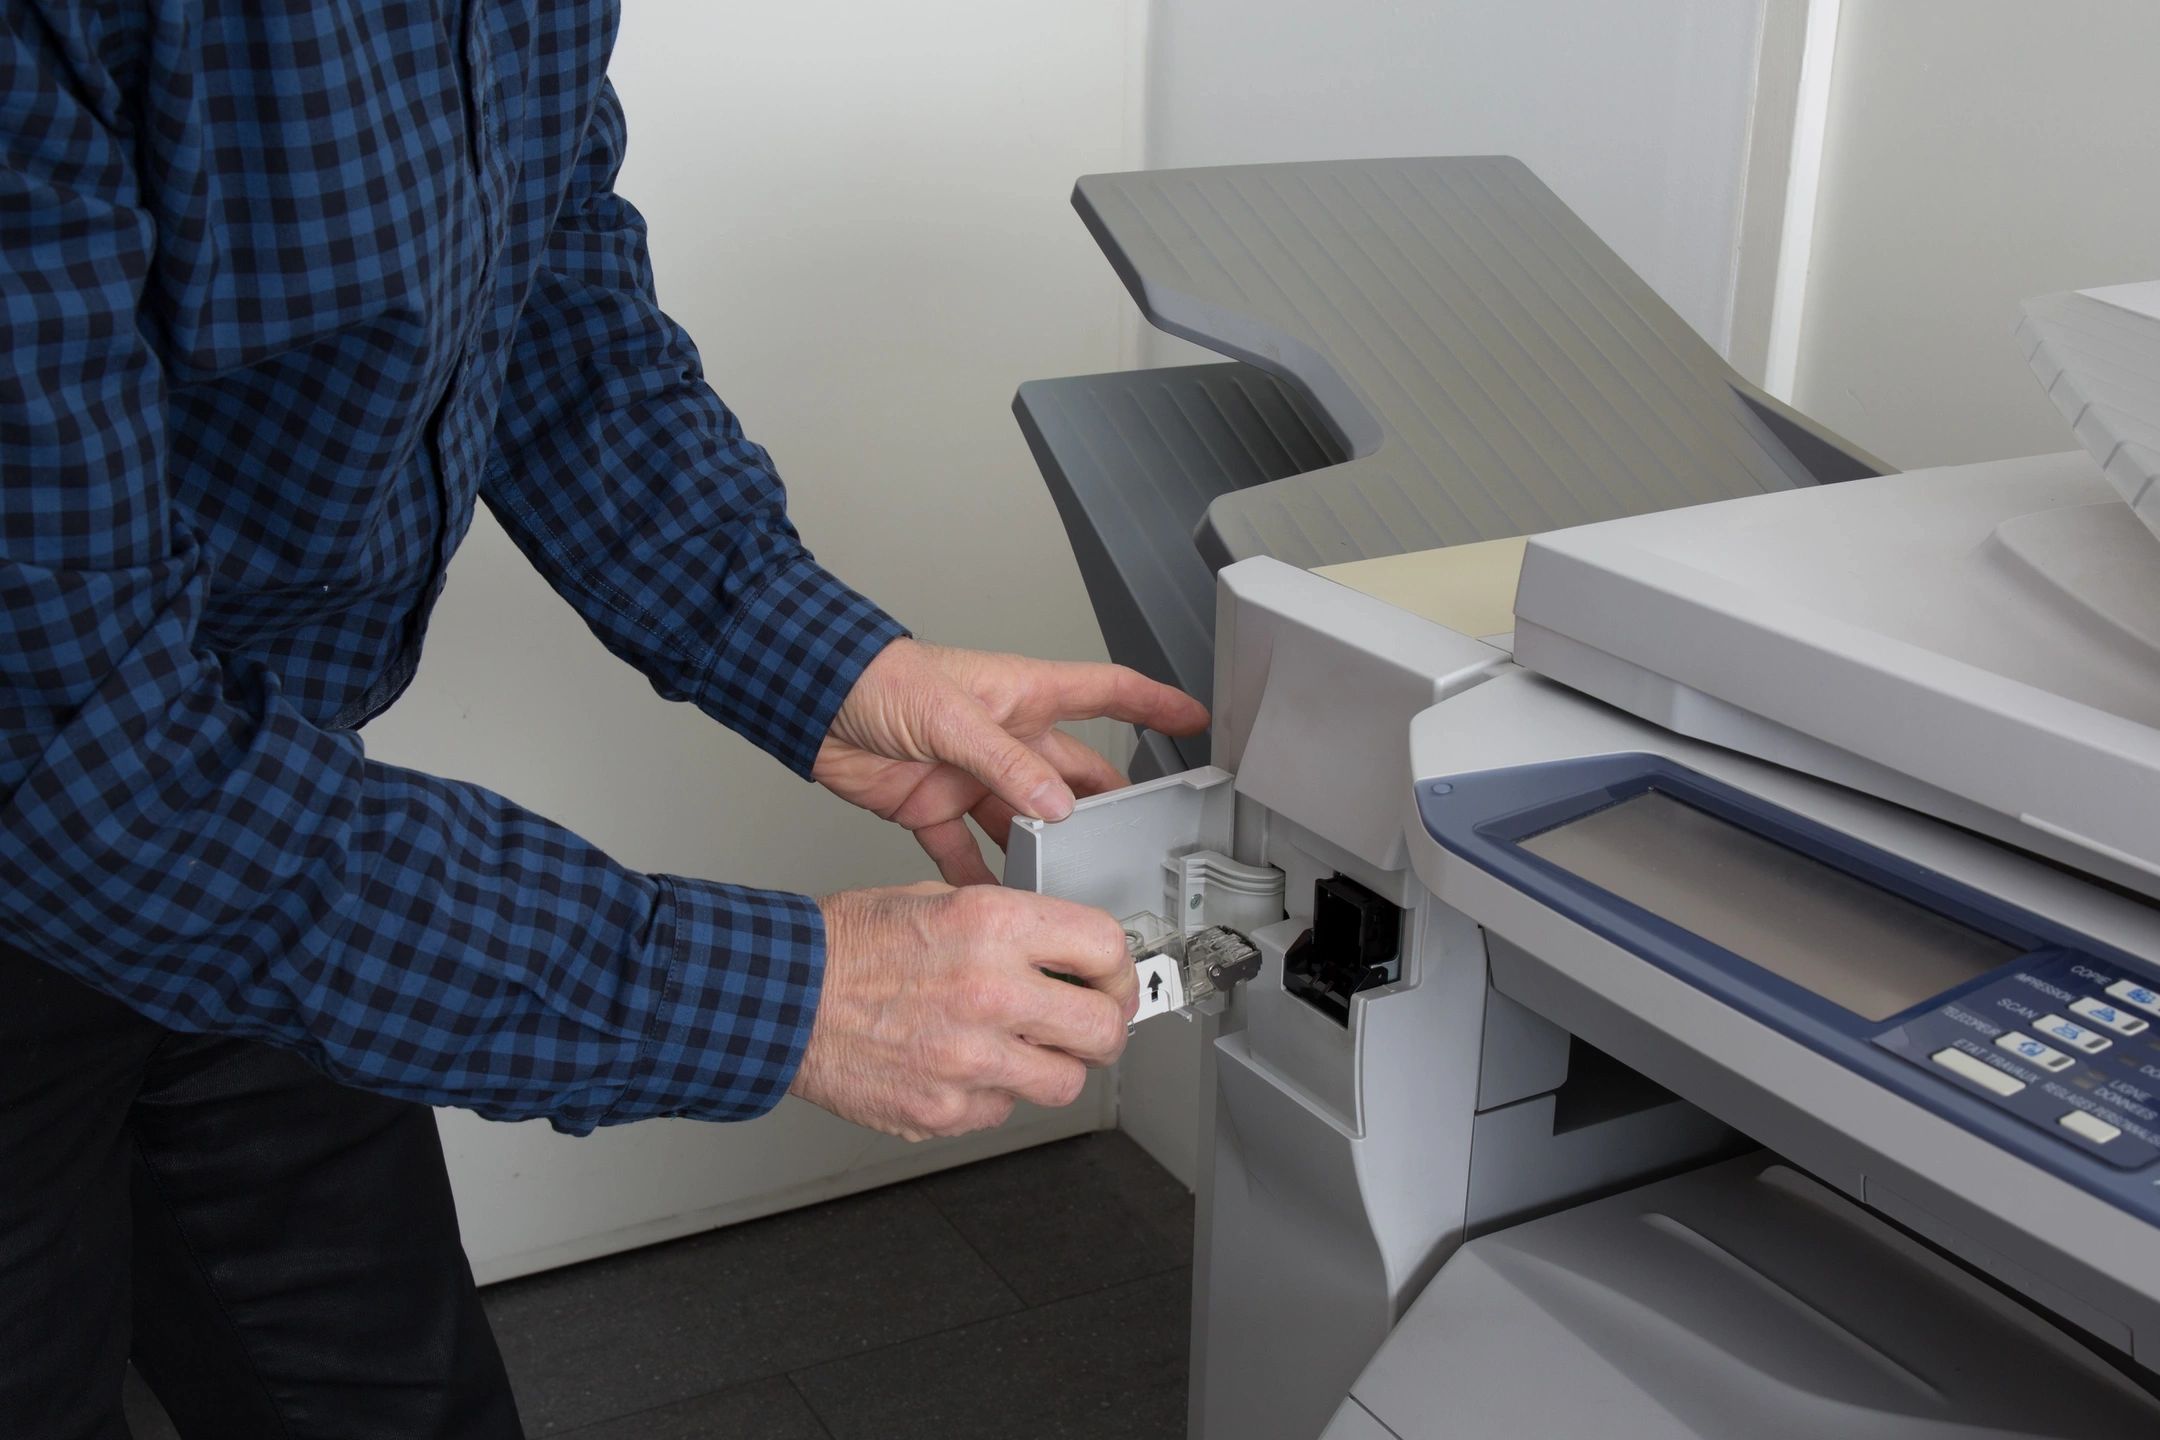 Call for laser printer repair in Chandler Arizona